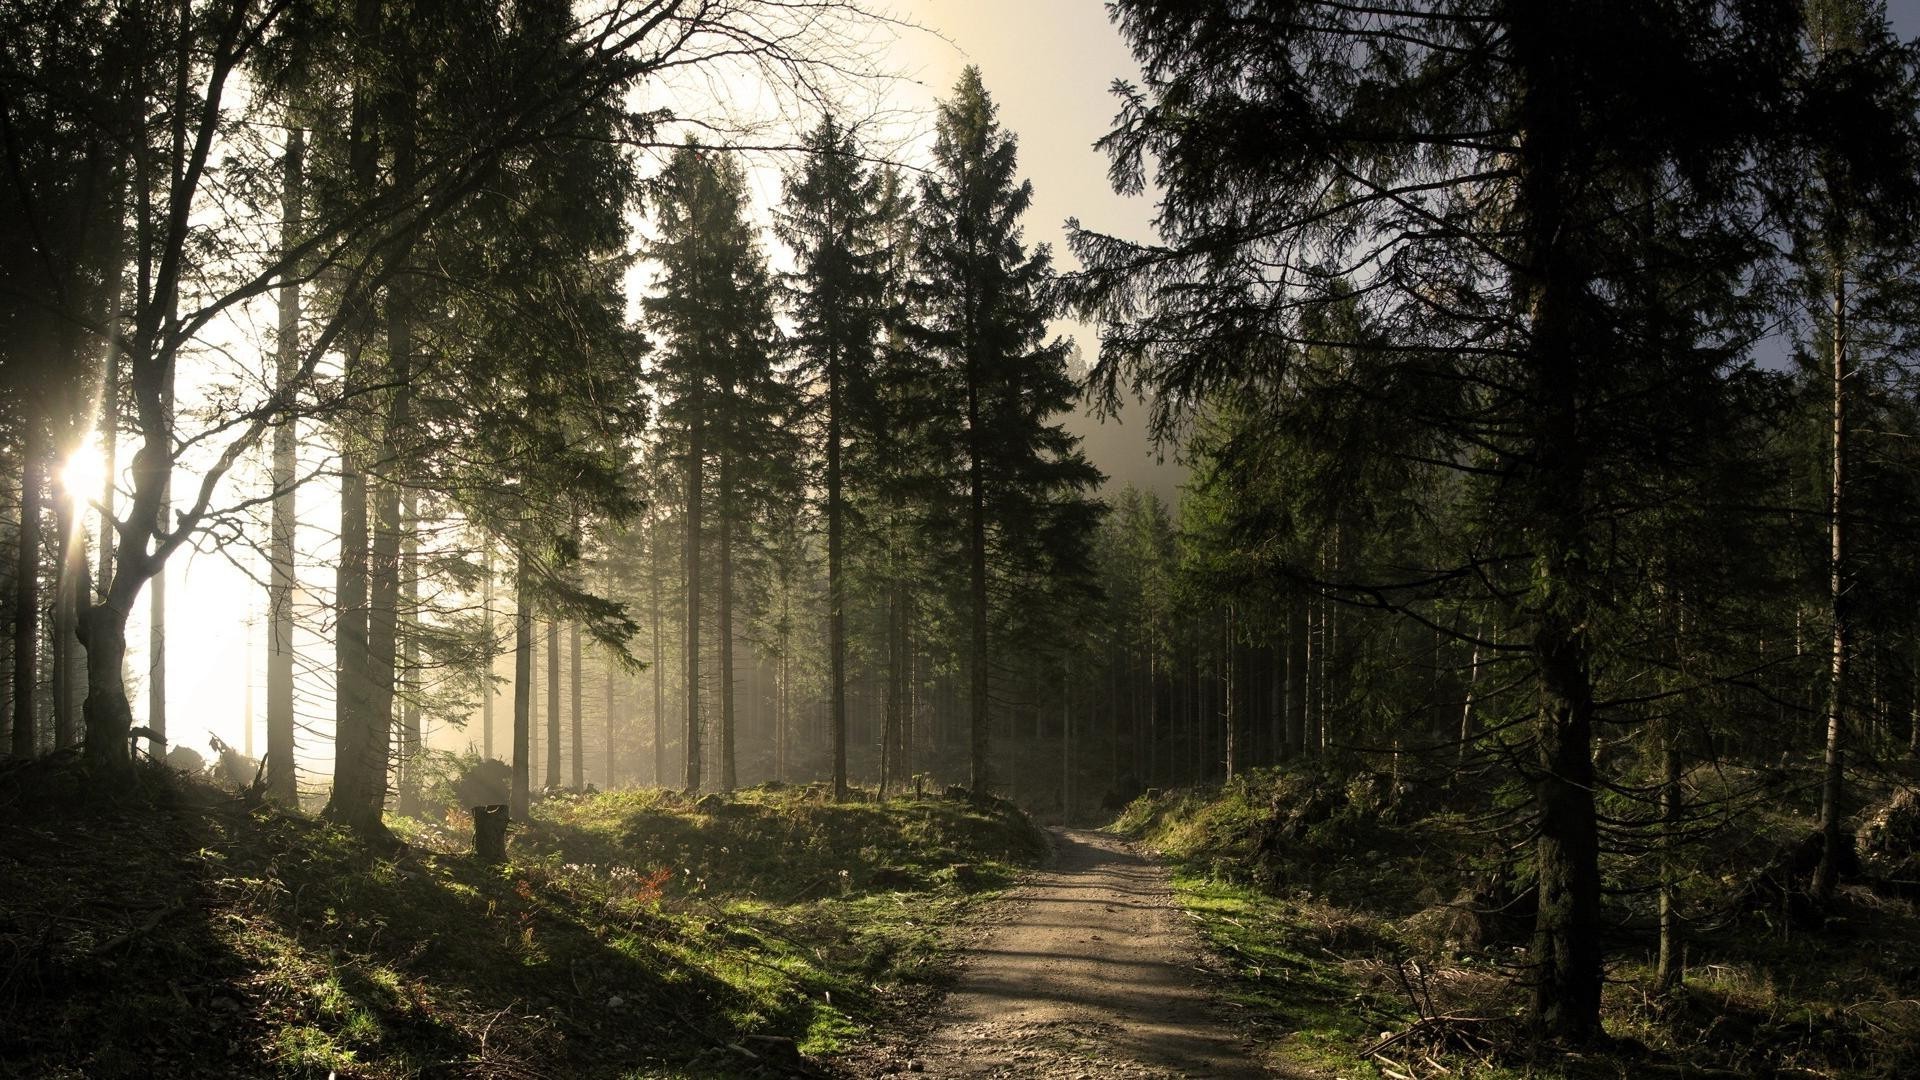 закат и рассвет дерево древесины туман пейзаж природа туман рассвет на открытом воздухе лист свет хвойные солнце осень парк хорошую погоду дорога руководство живописный среды